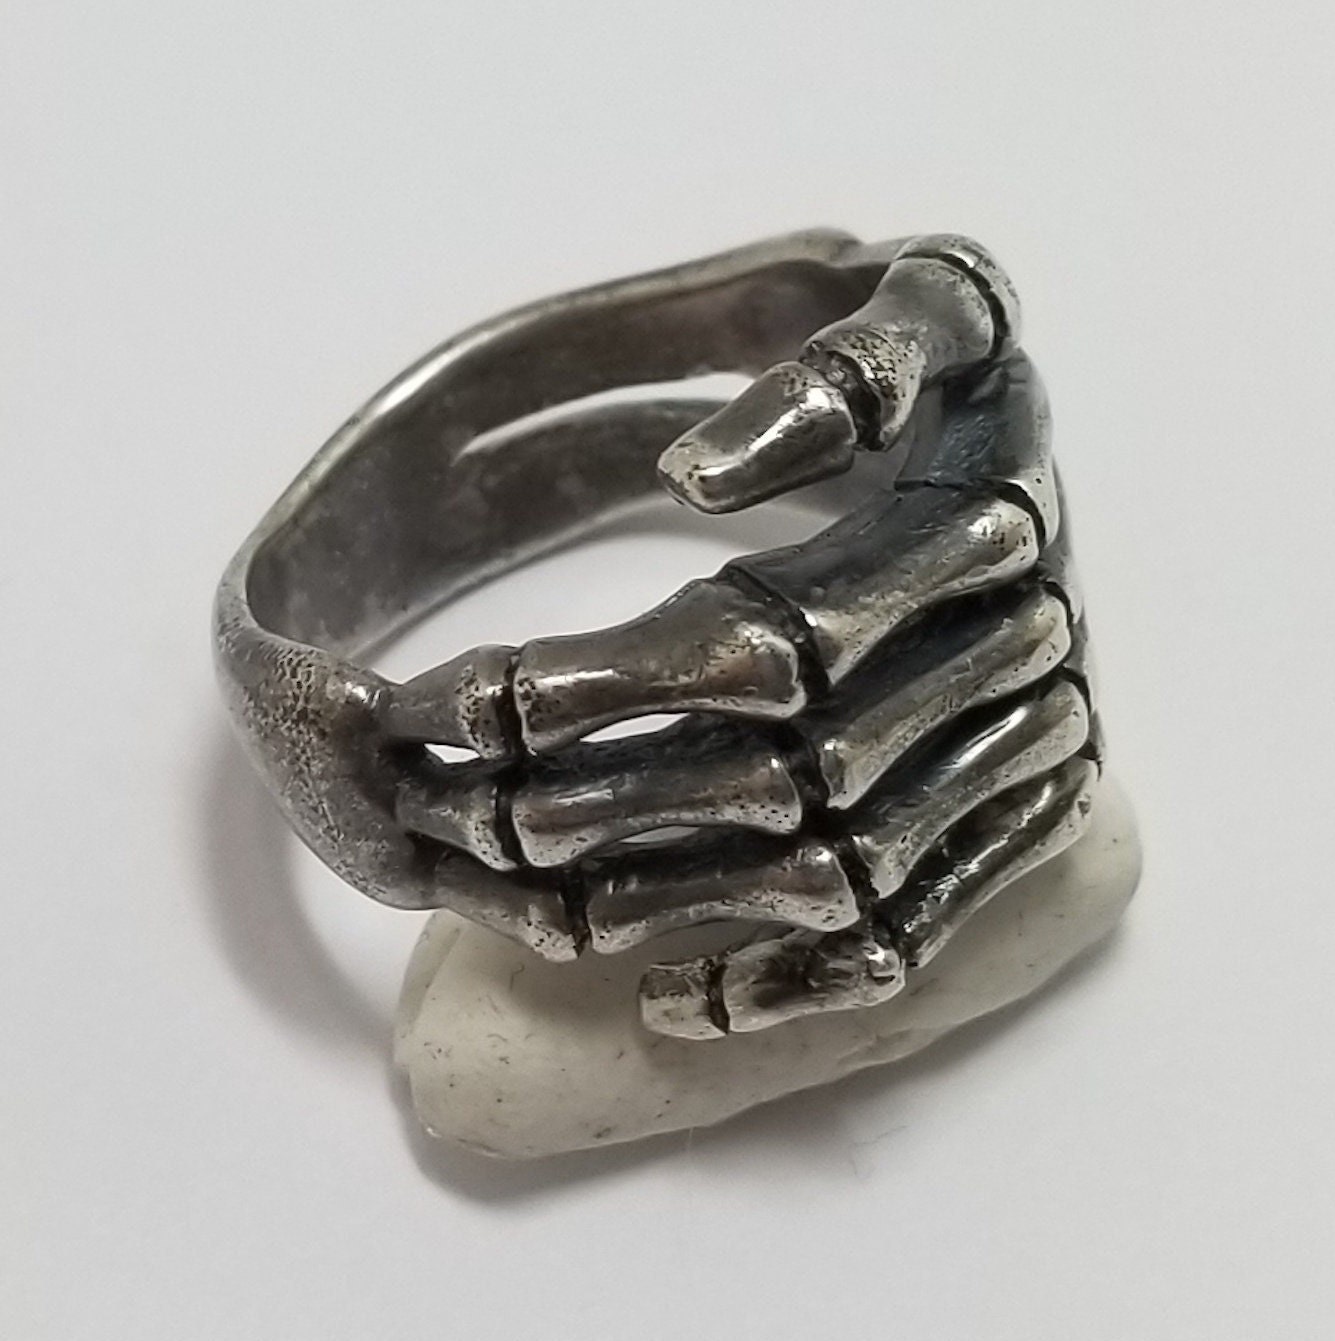 CRAZY PIG Skeleton Hand Ring / 925 Sterling Silver / Skeleton Ring